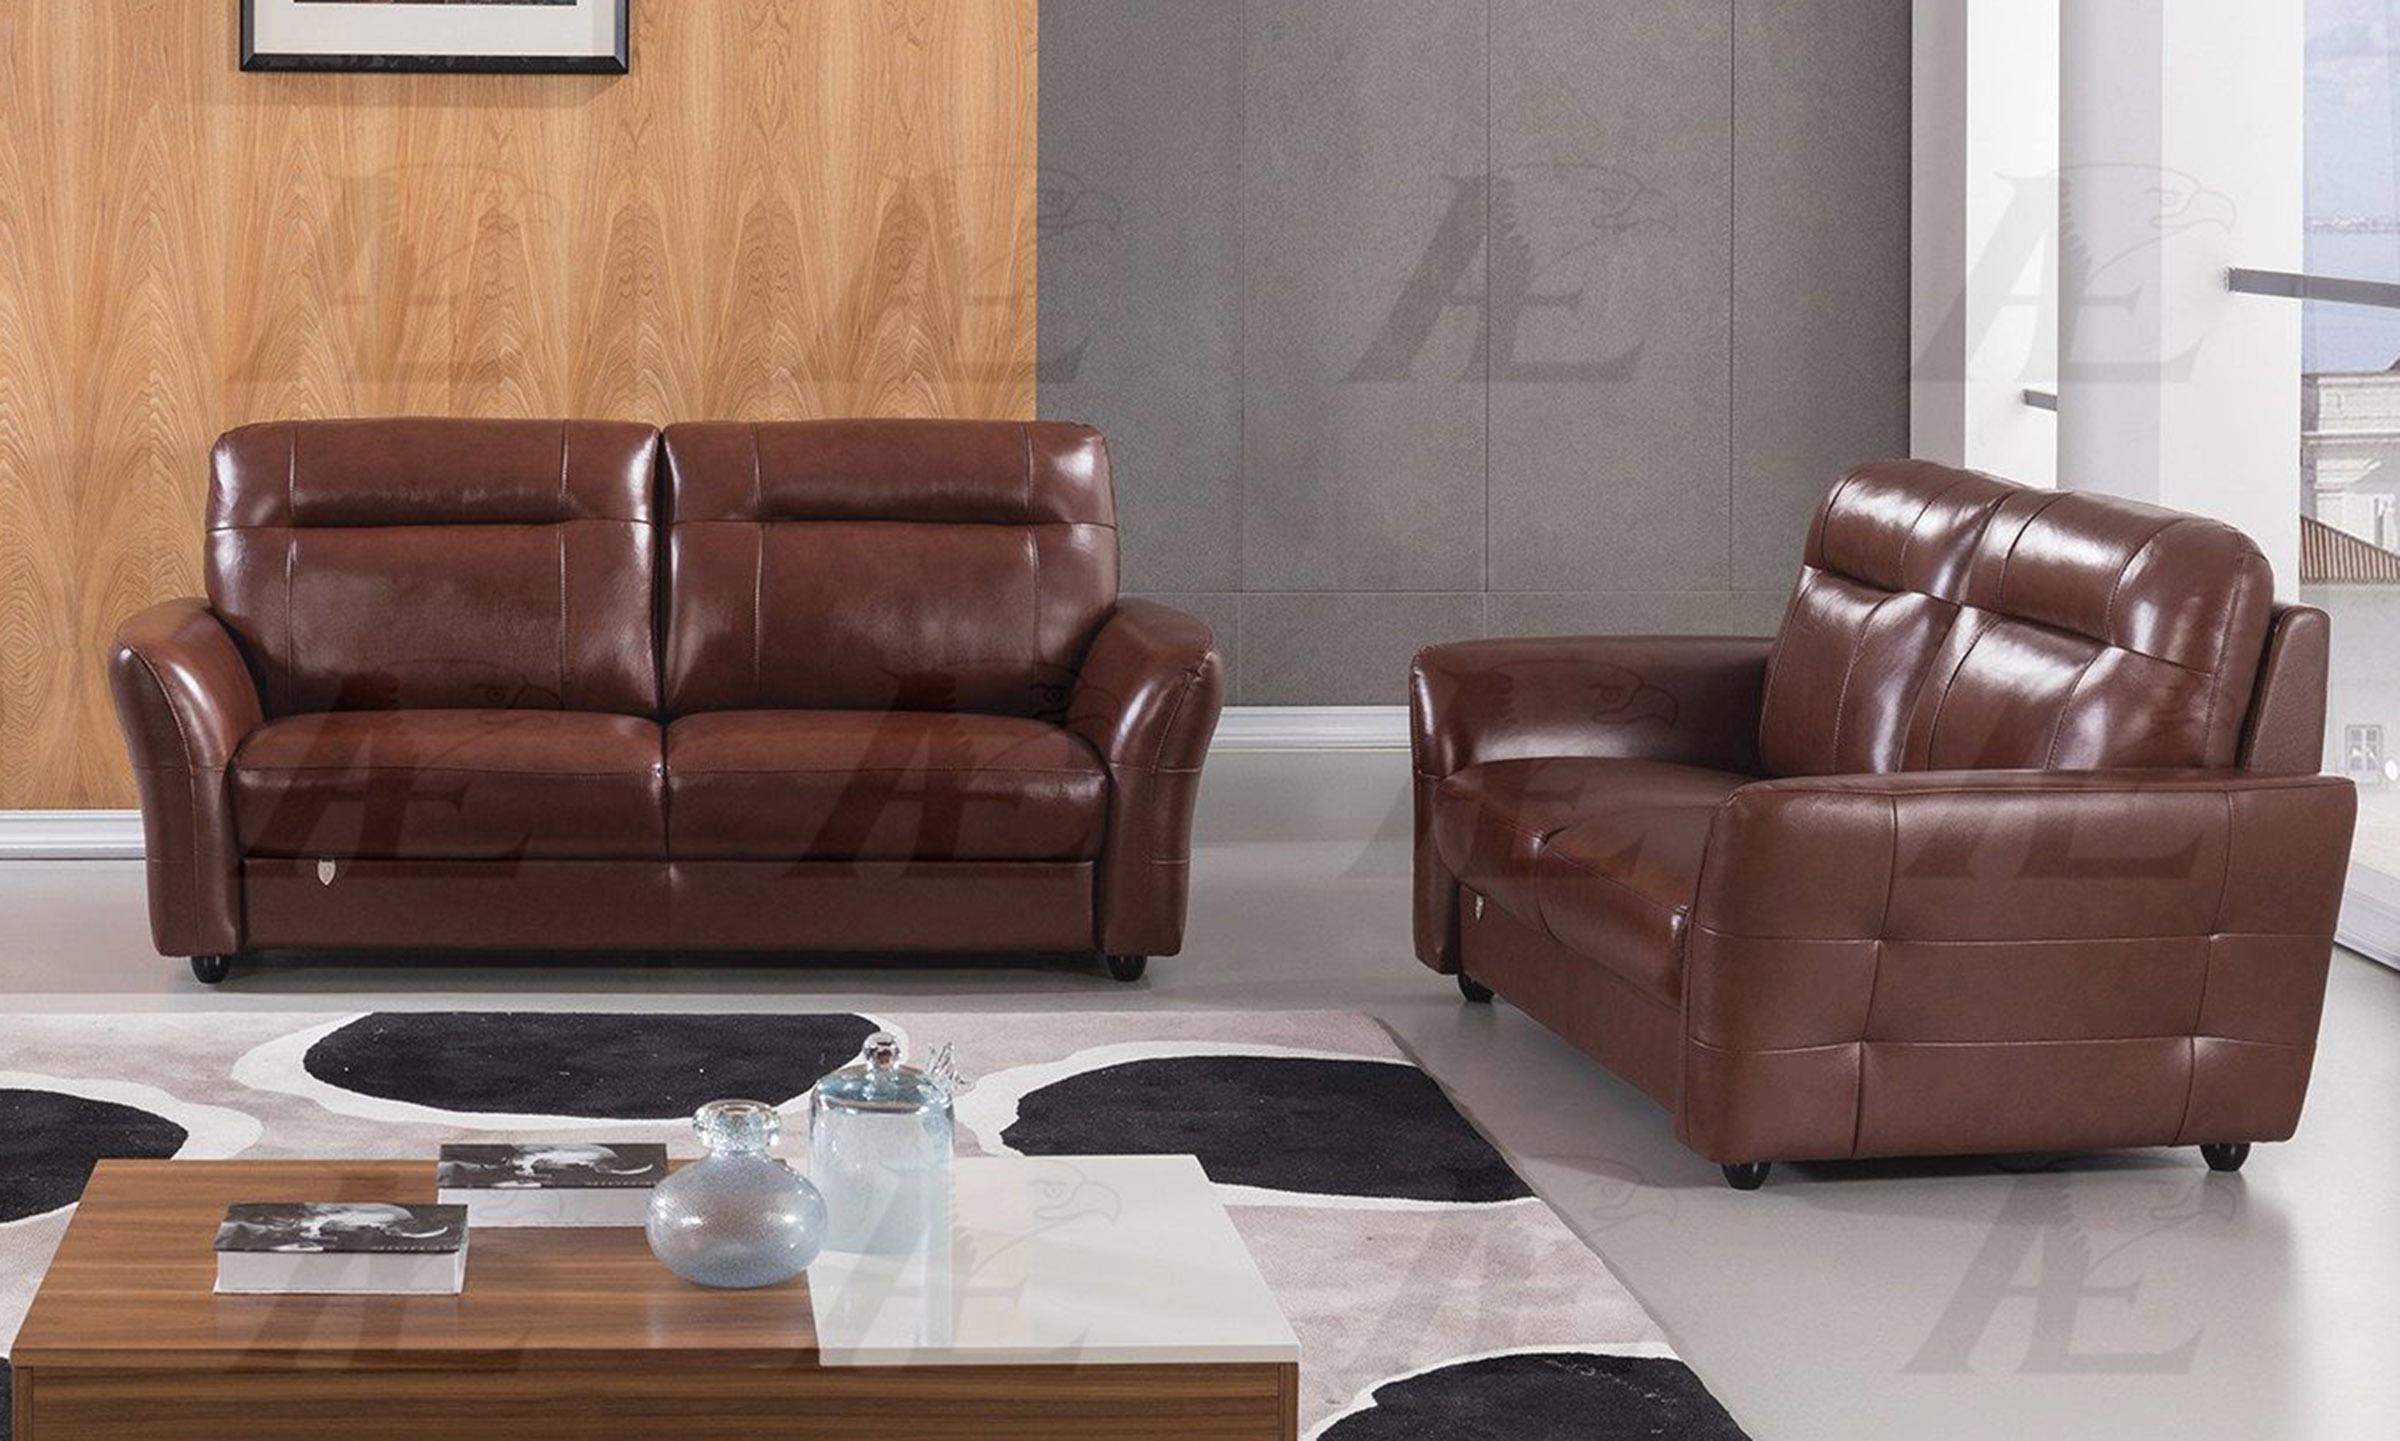 

    
American Eagle Furniture EK090-BR-LS Loveseat Brown EK090-BR-LS
